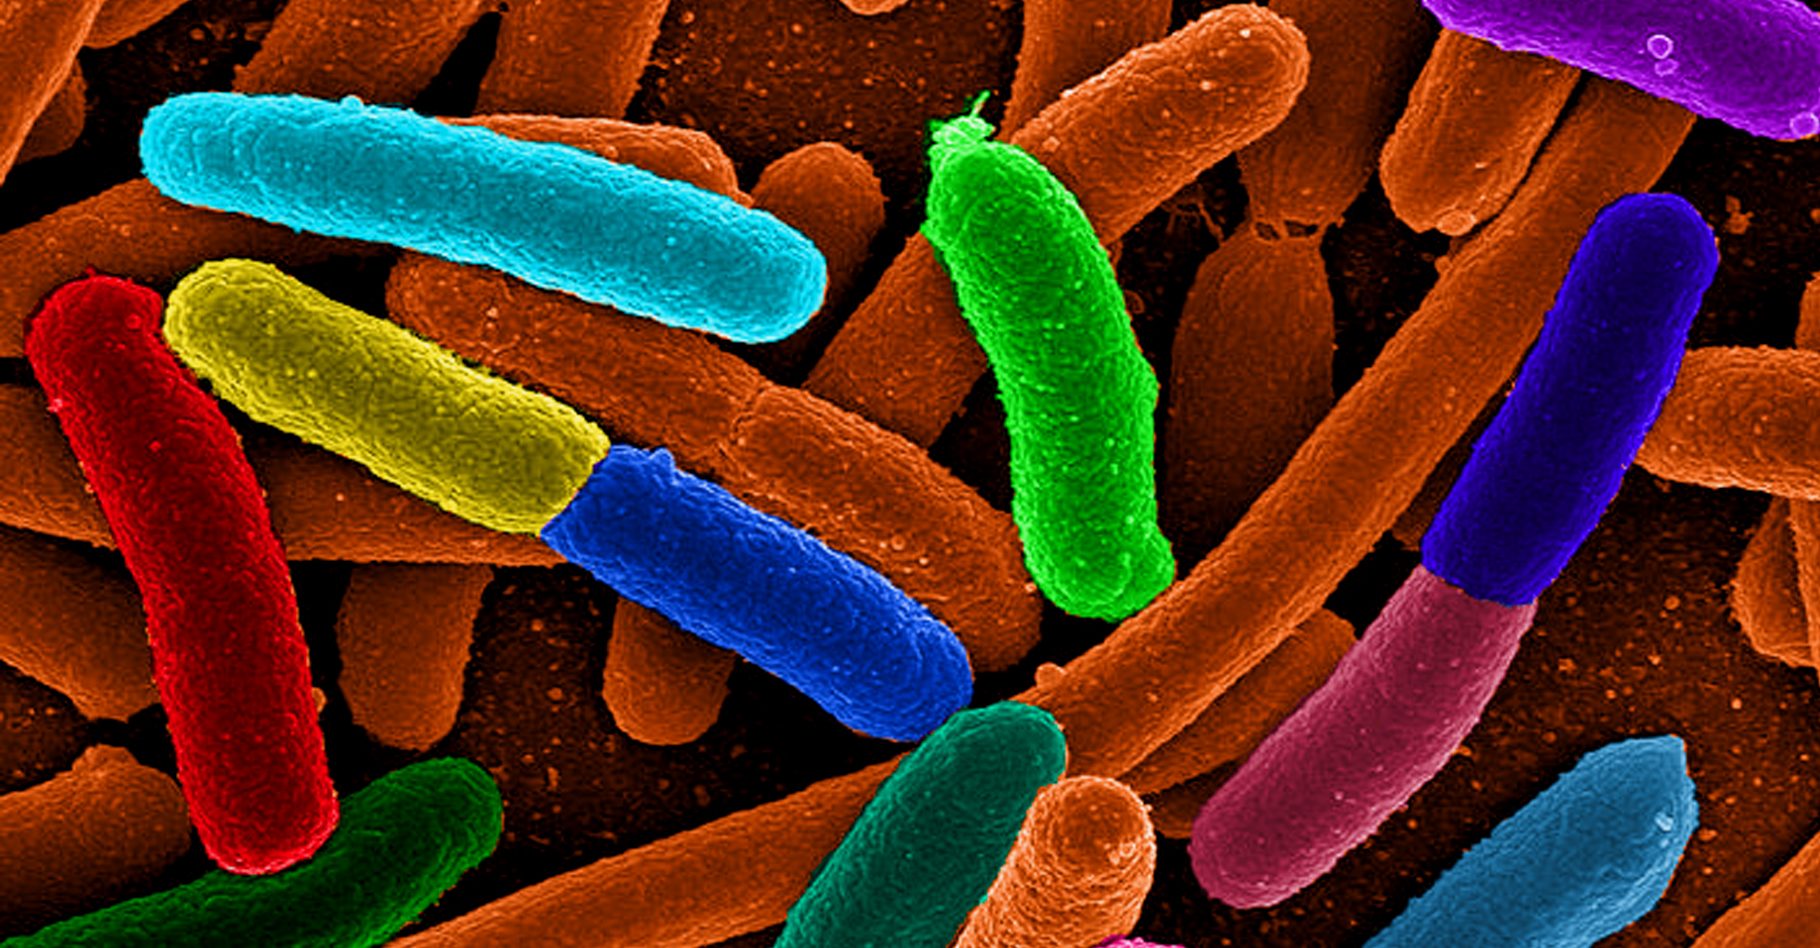 Bactéries Escherichia coli. © Mattosaurus, Domaine public